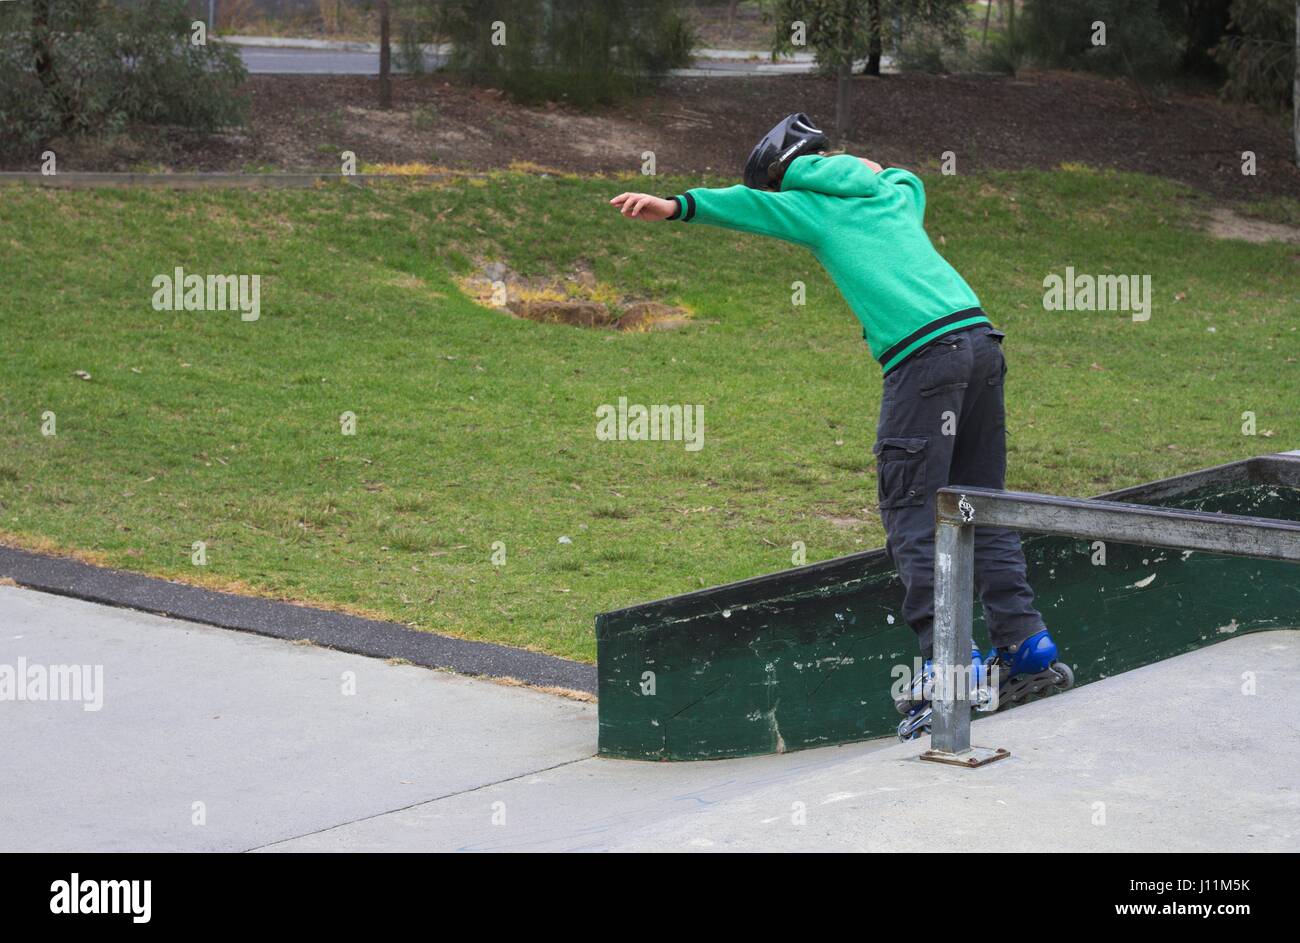 Giovane ragazzo adolescente ondeggia sui pattini a rotelle in linea scendendo una rampa. Foto Stock